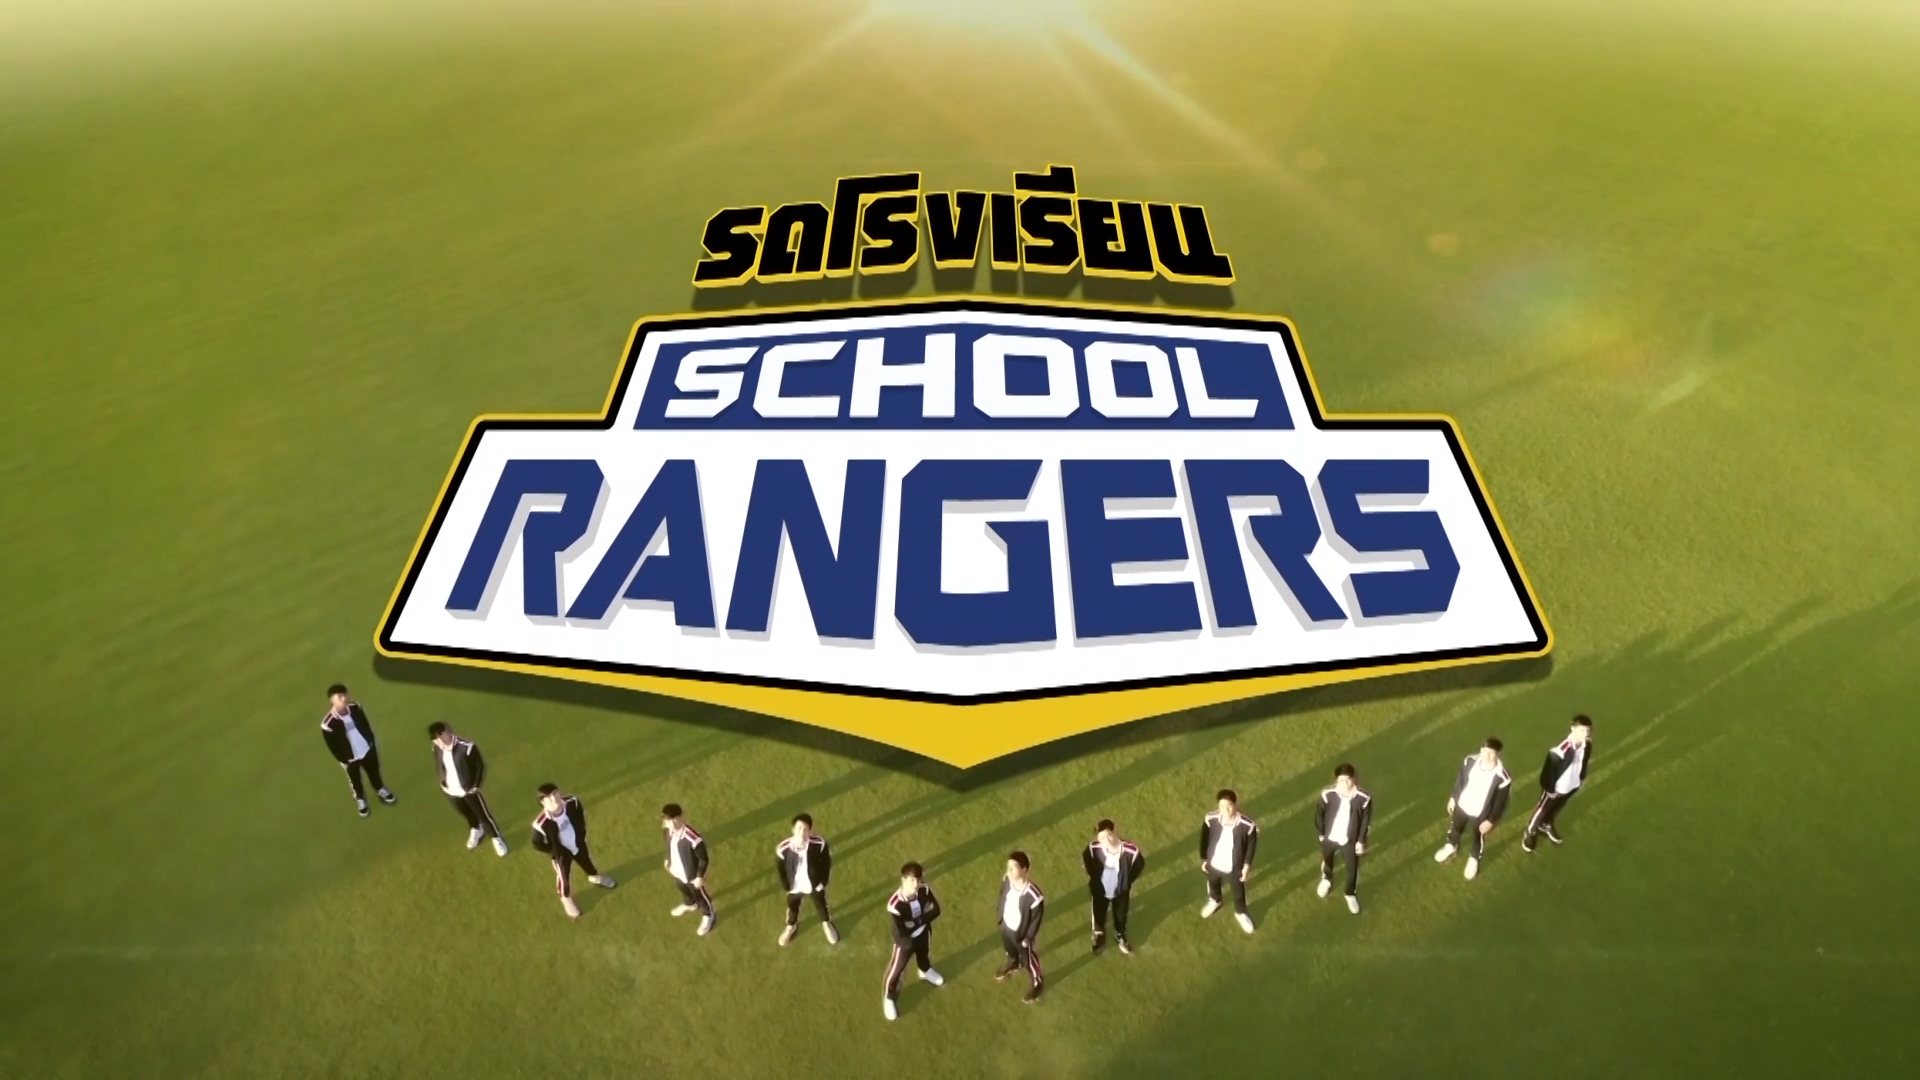 『School Rangers』